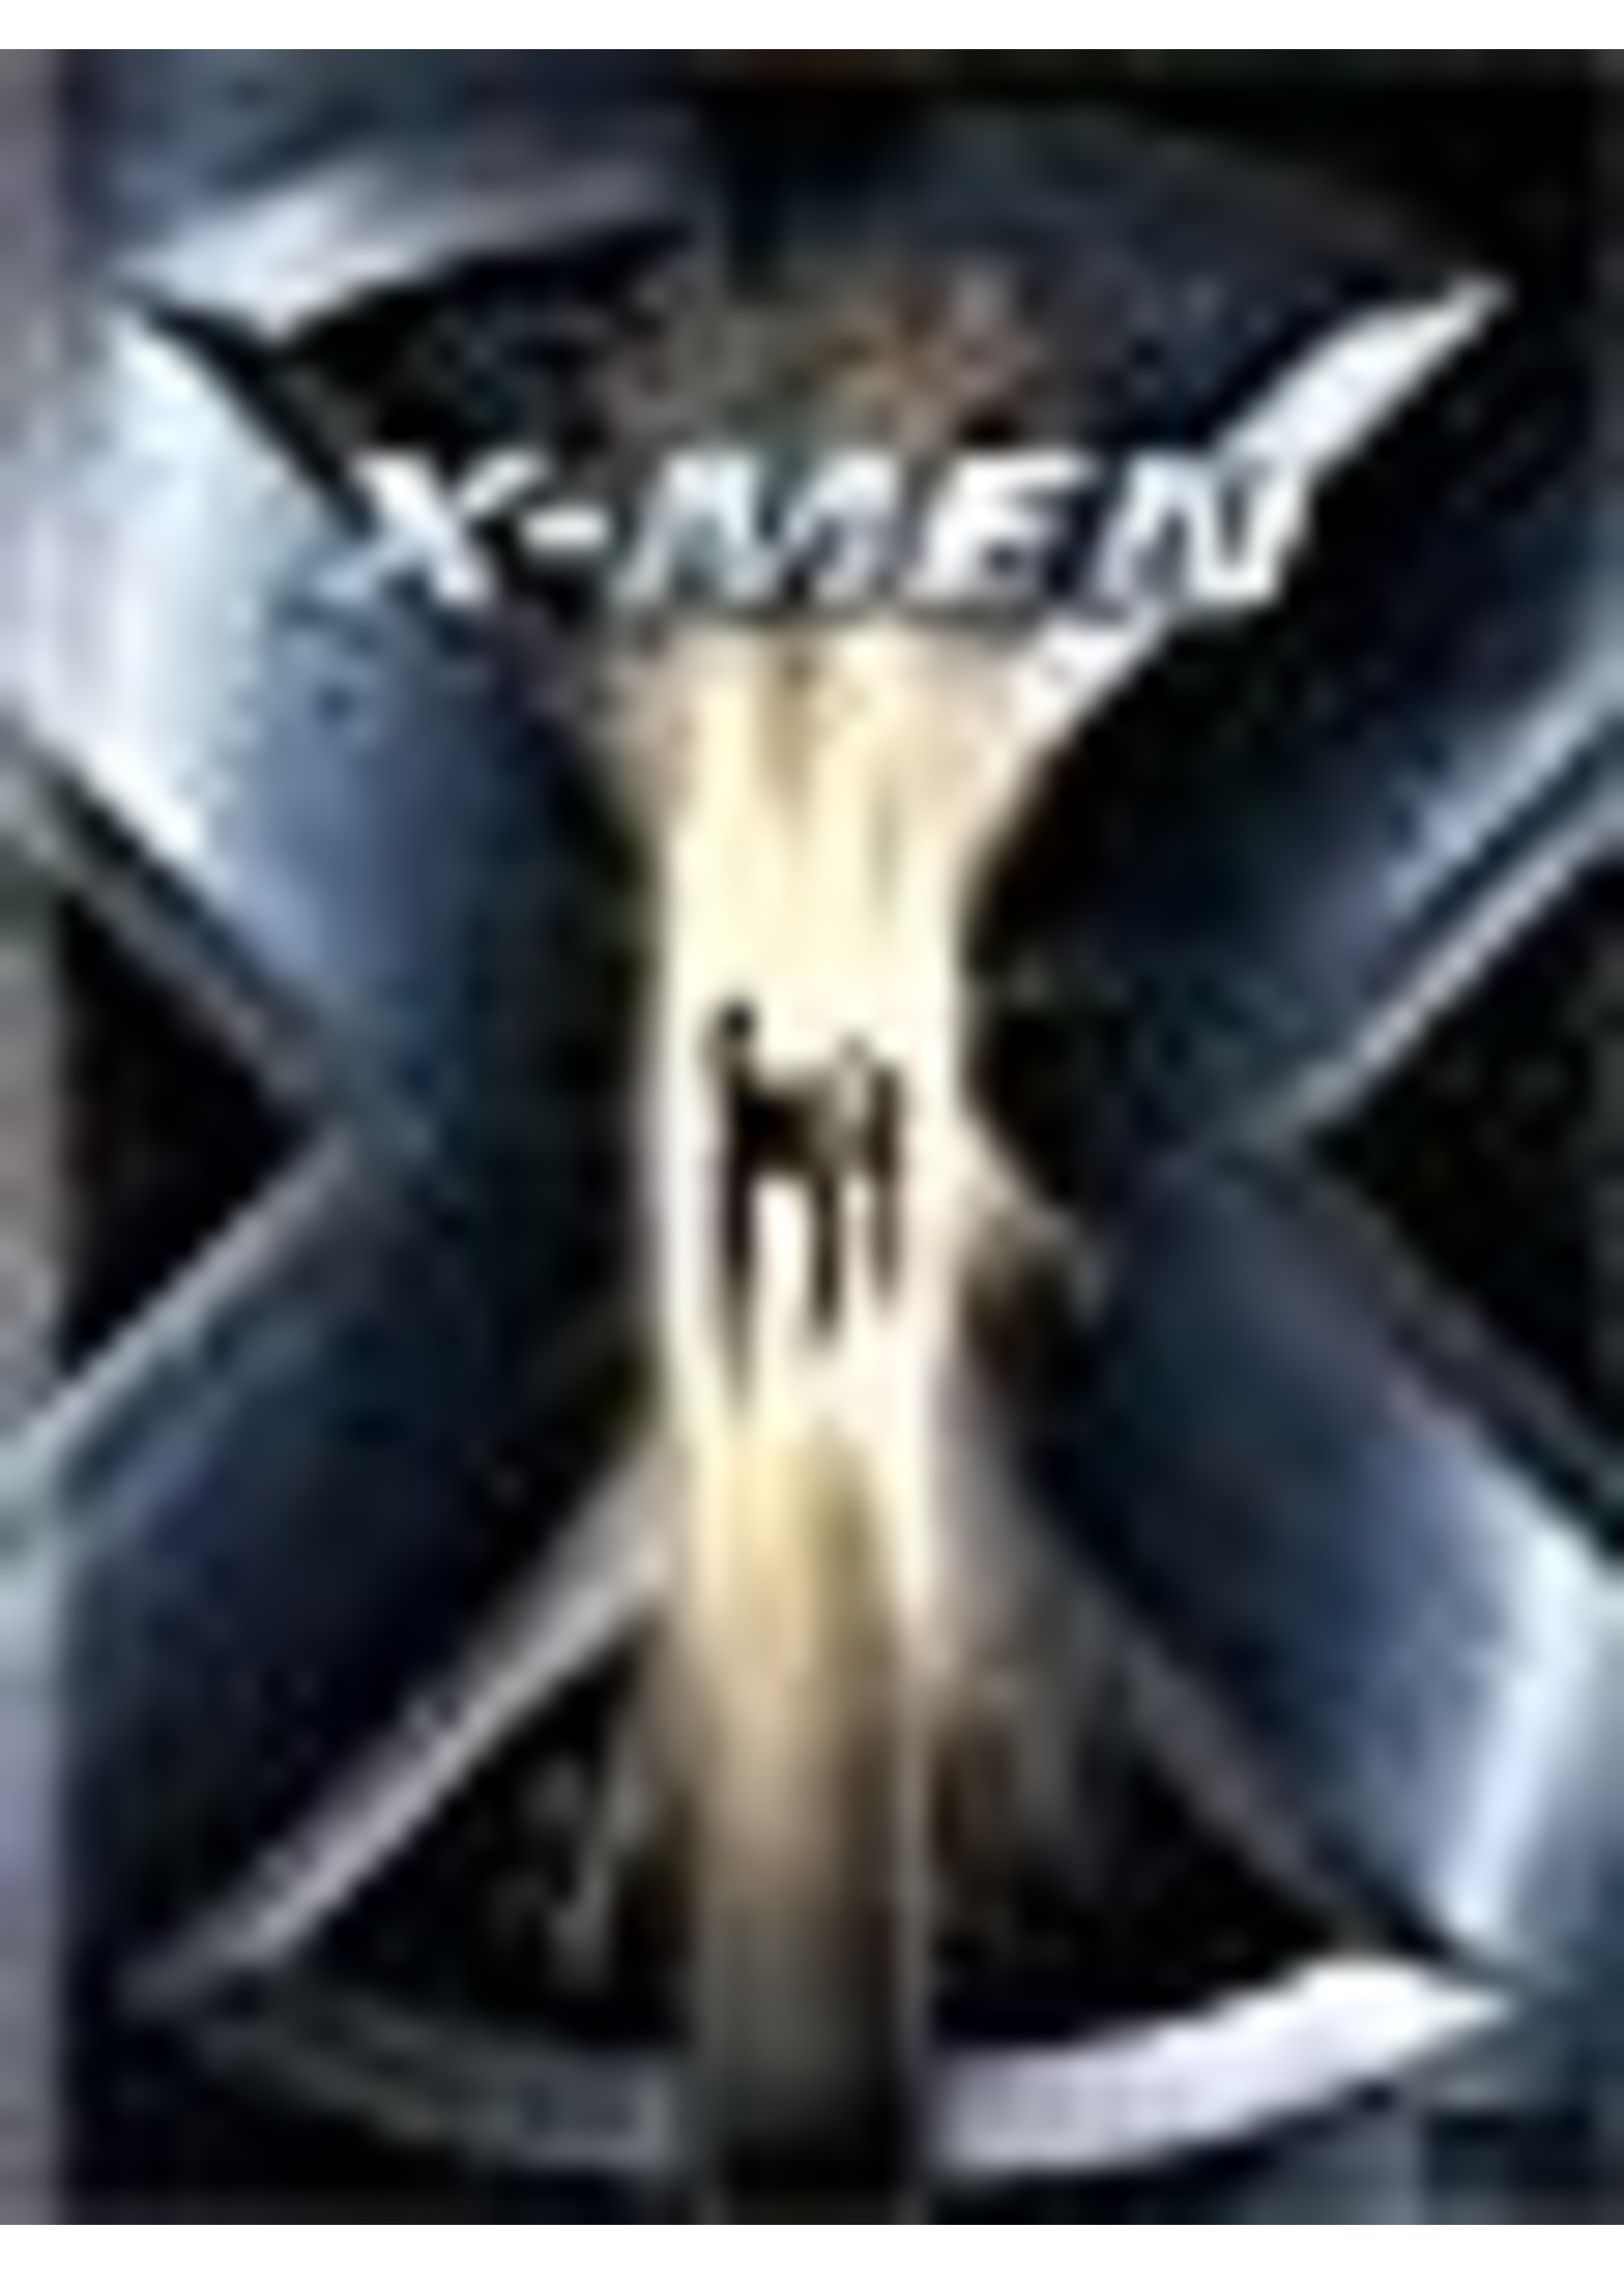 X-Men (Widescreen)